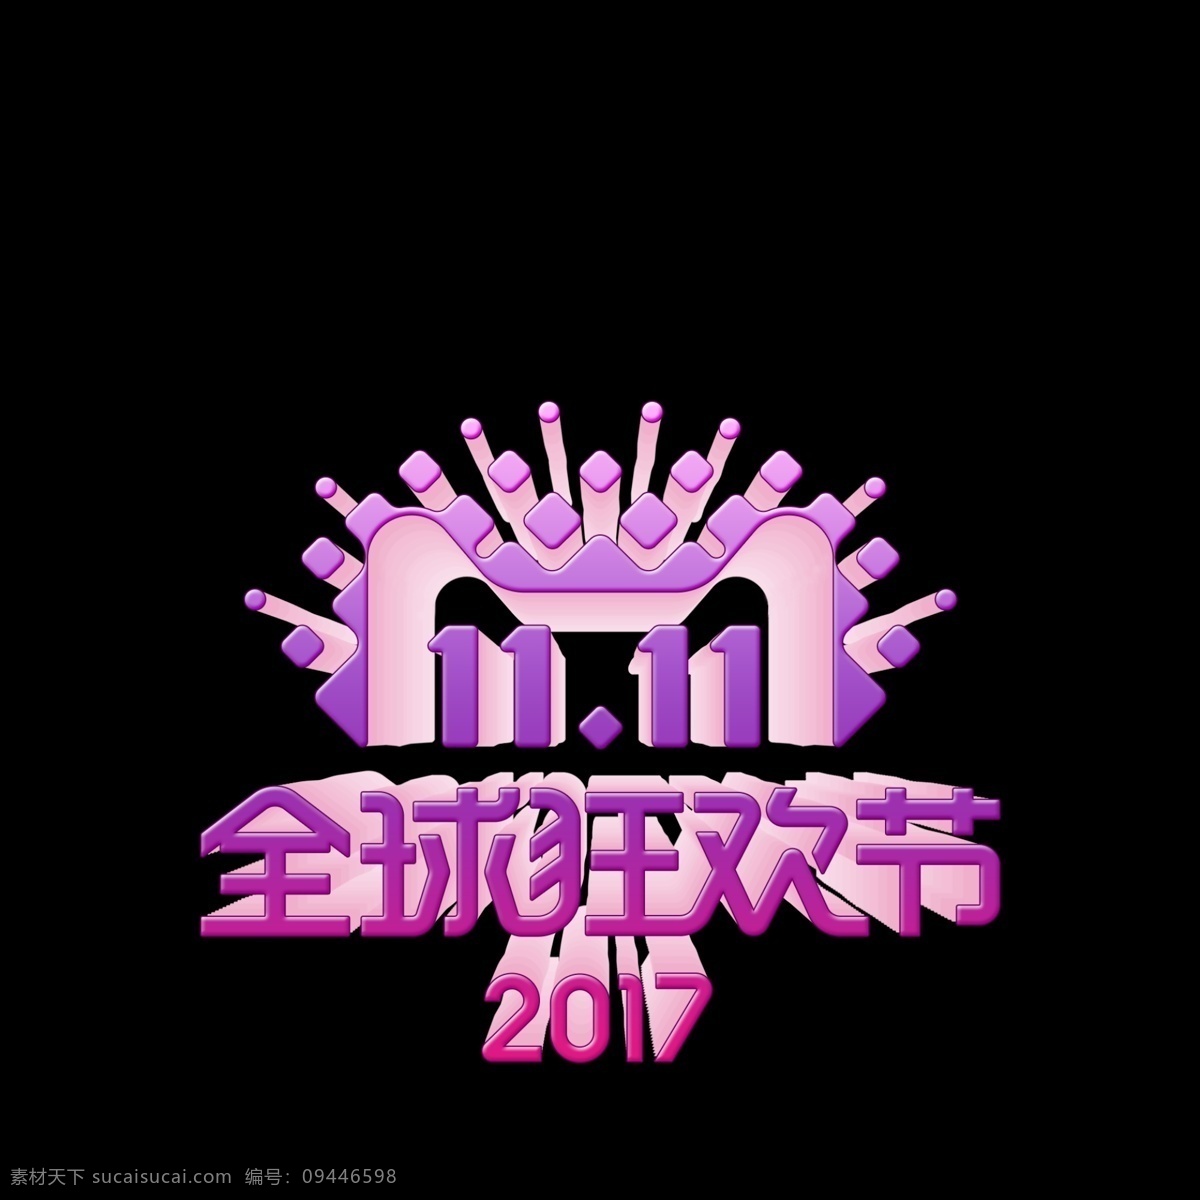 2017 双 logo 年度 标识 双11 全球狂欢节 2017年 年度标识